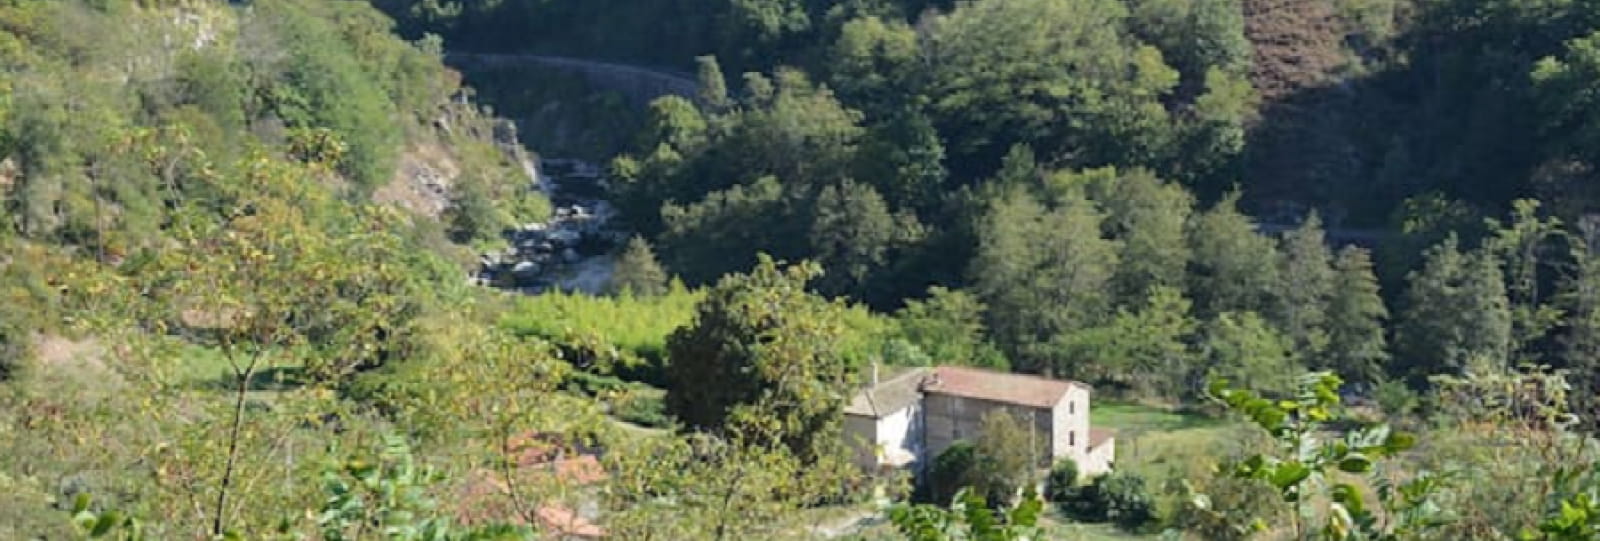 Vue d'ensemble du gîte.
Au second plan, la rivière 'le Doux' avec au dessus la voie ferrée du Train de l'Ardèche ainsi que le Vélo-rail. 